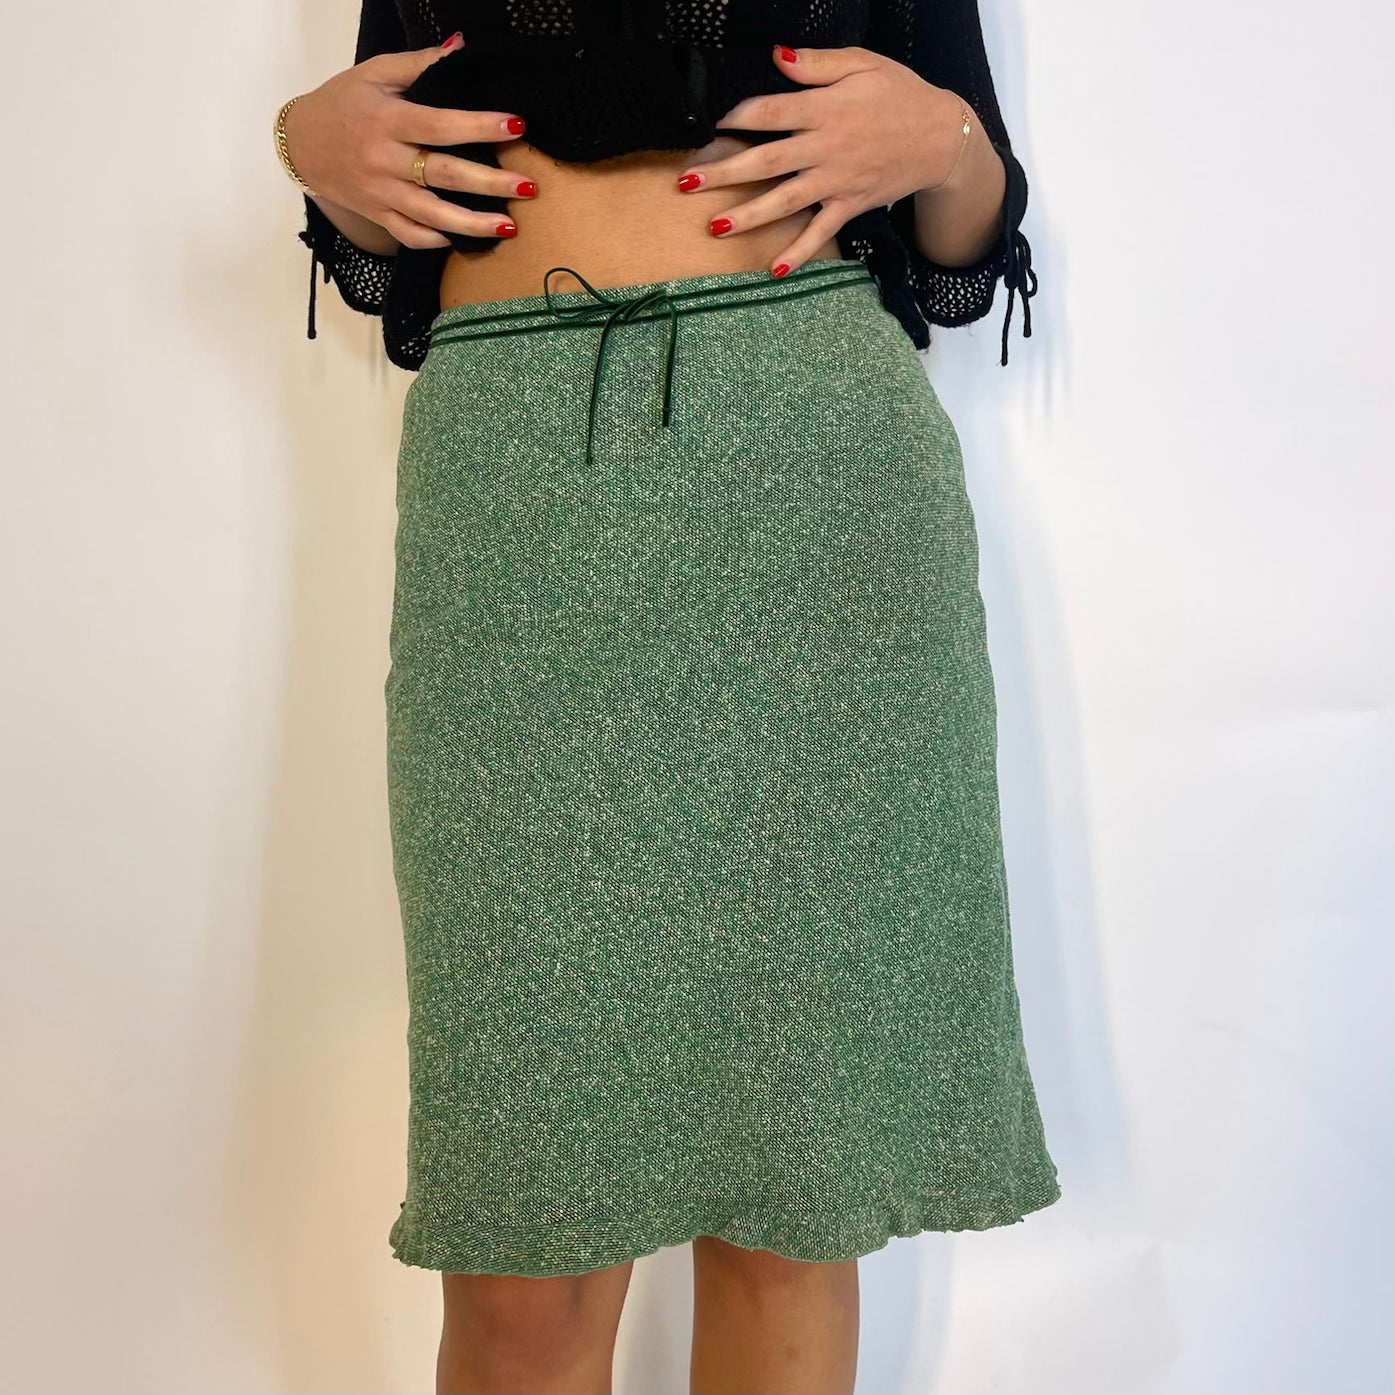 burberry skirt